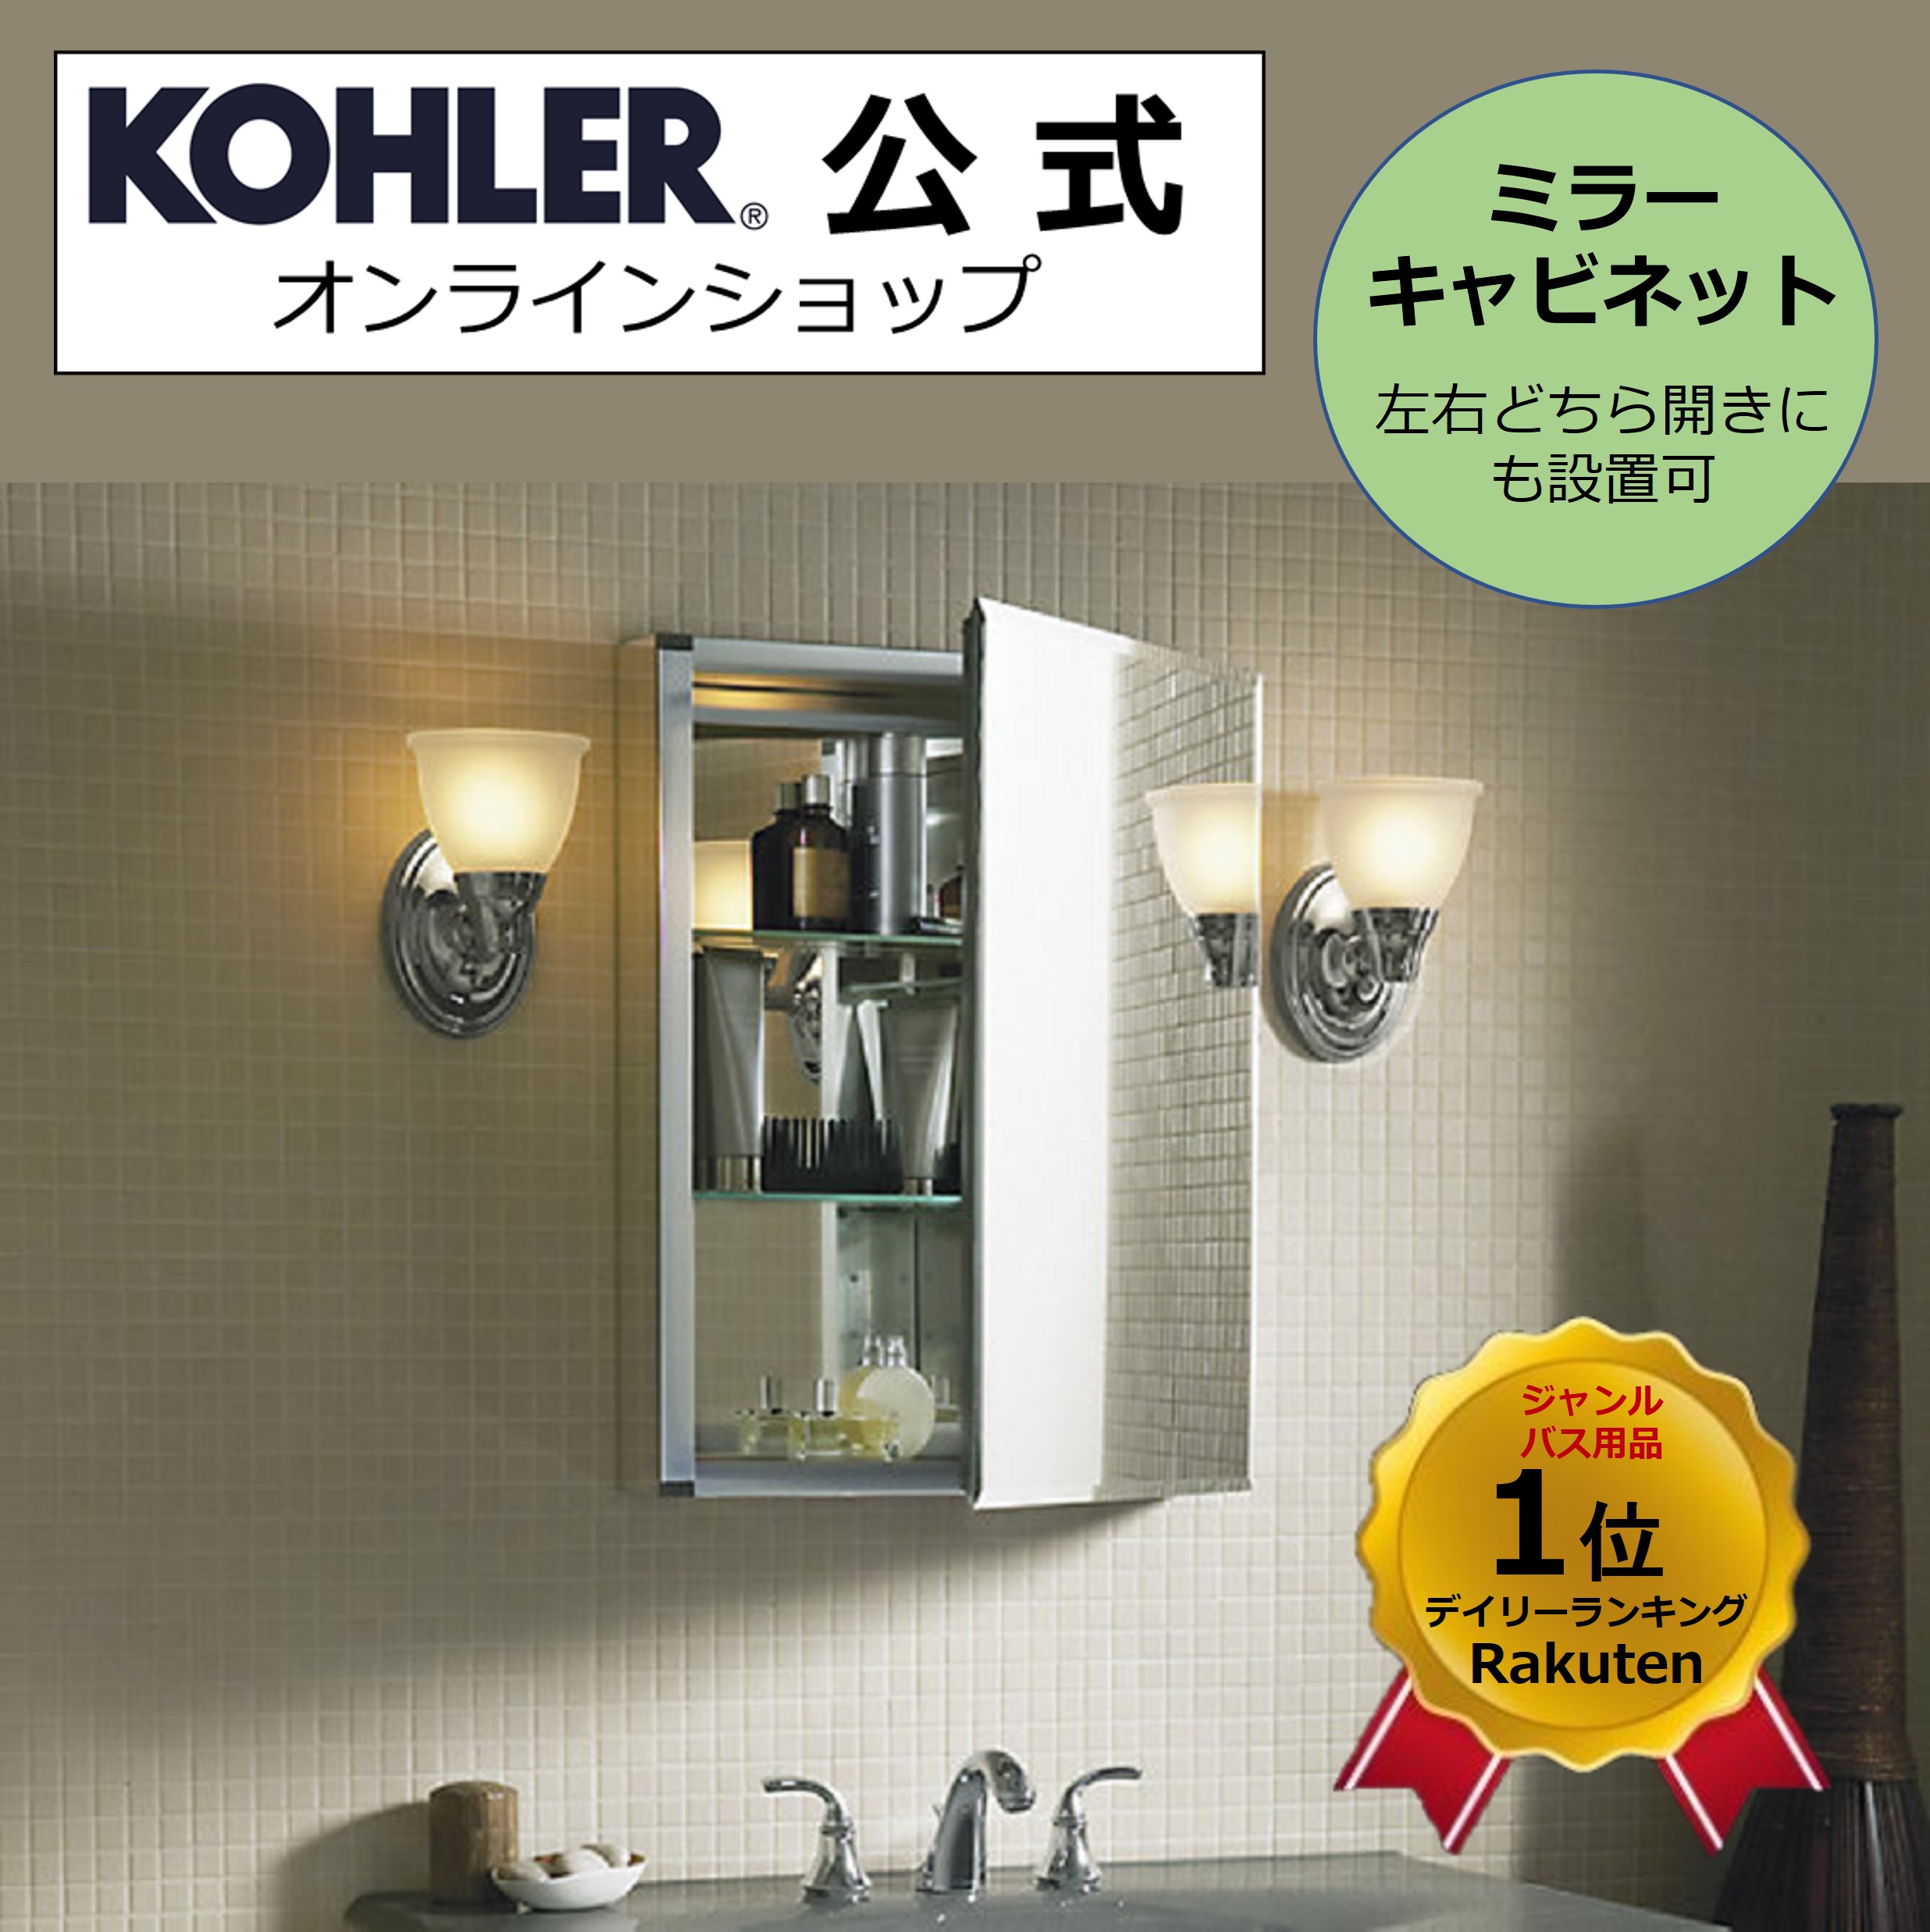 Kohler コーラー ノンフレーム 洗面台 鏡 キャビネット 洗面 壁付けまたは埋め込み ミラーキャビネット 洗面